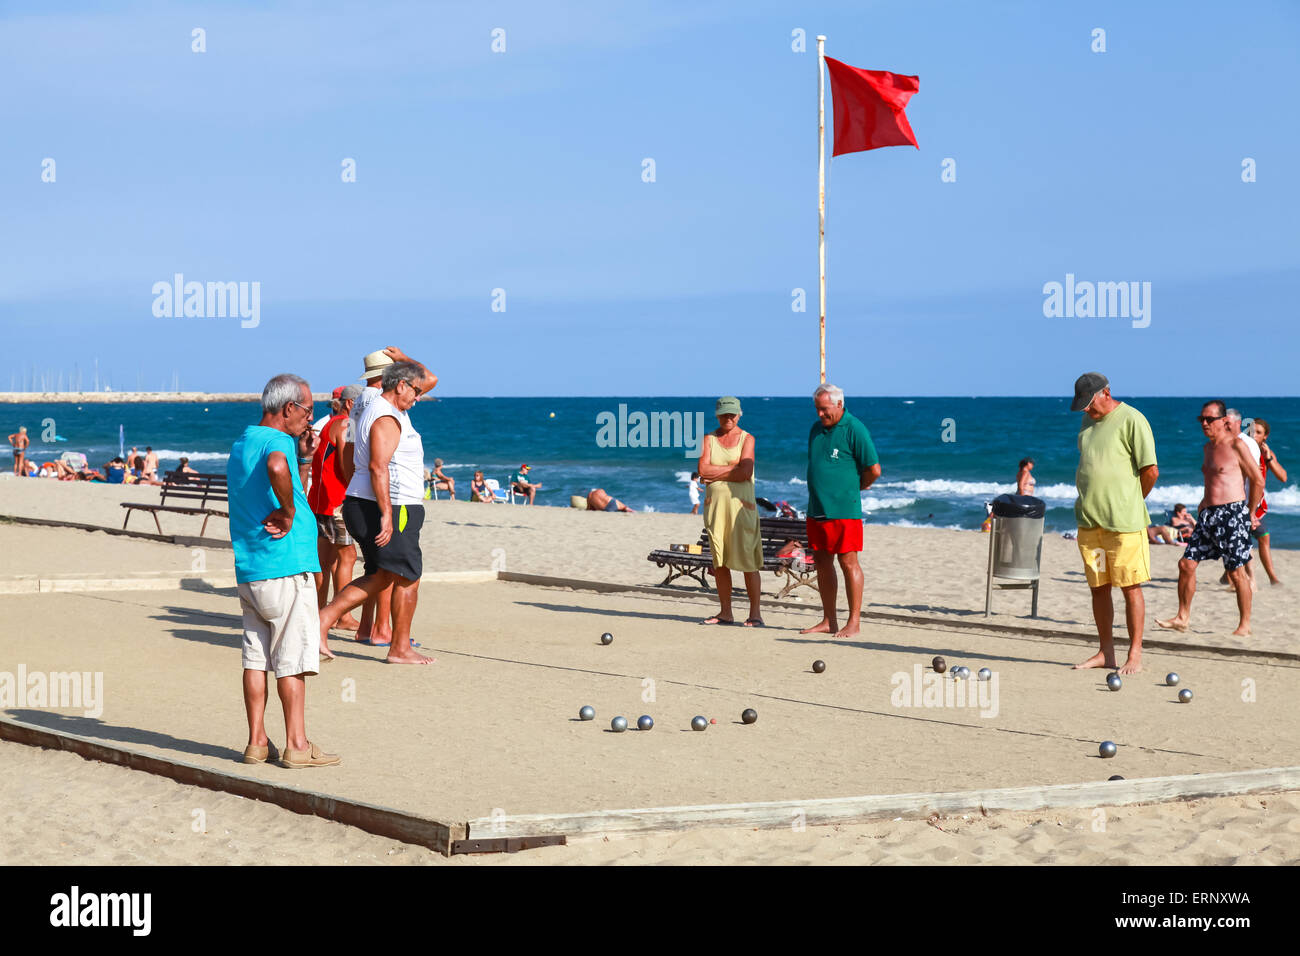 Calafell, Espagne - 20 août 2014 : Les Seniors espagnols jouer à la pétanque sur une plage de sable à Calafell, petite station touristique en Catalogne Banque D'Images